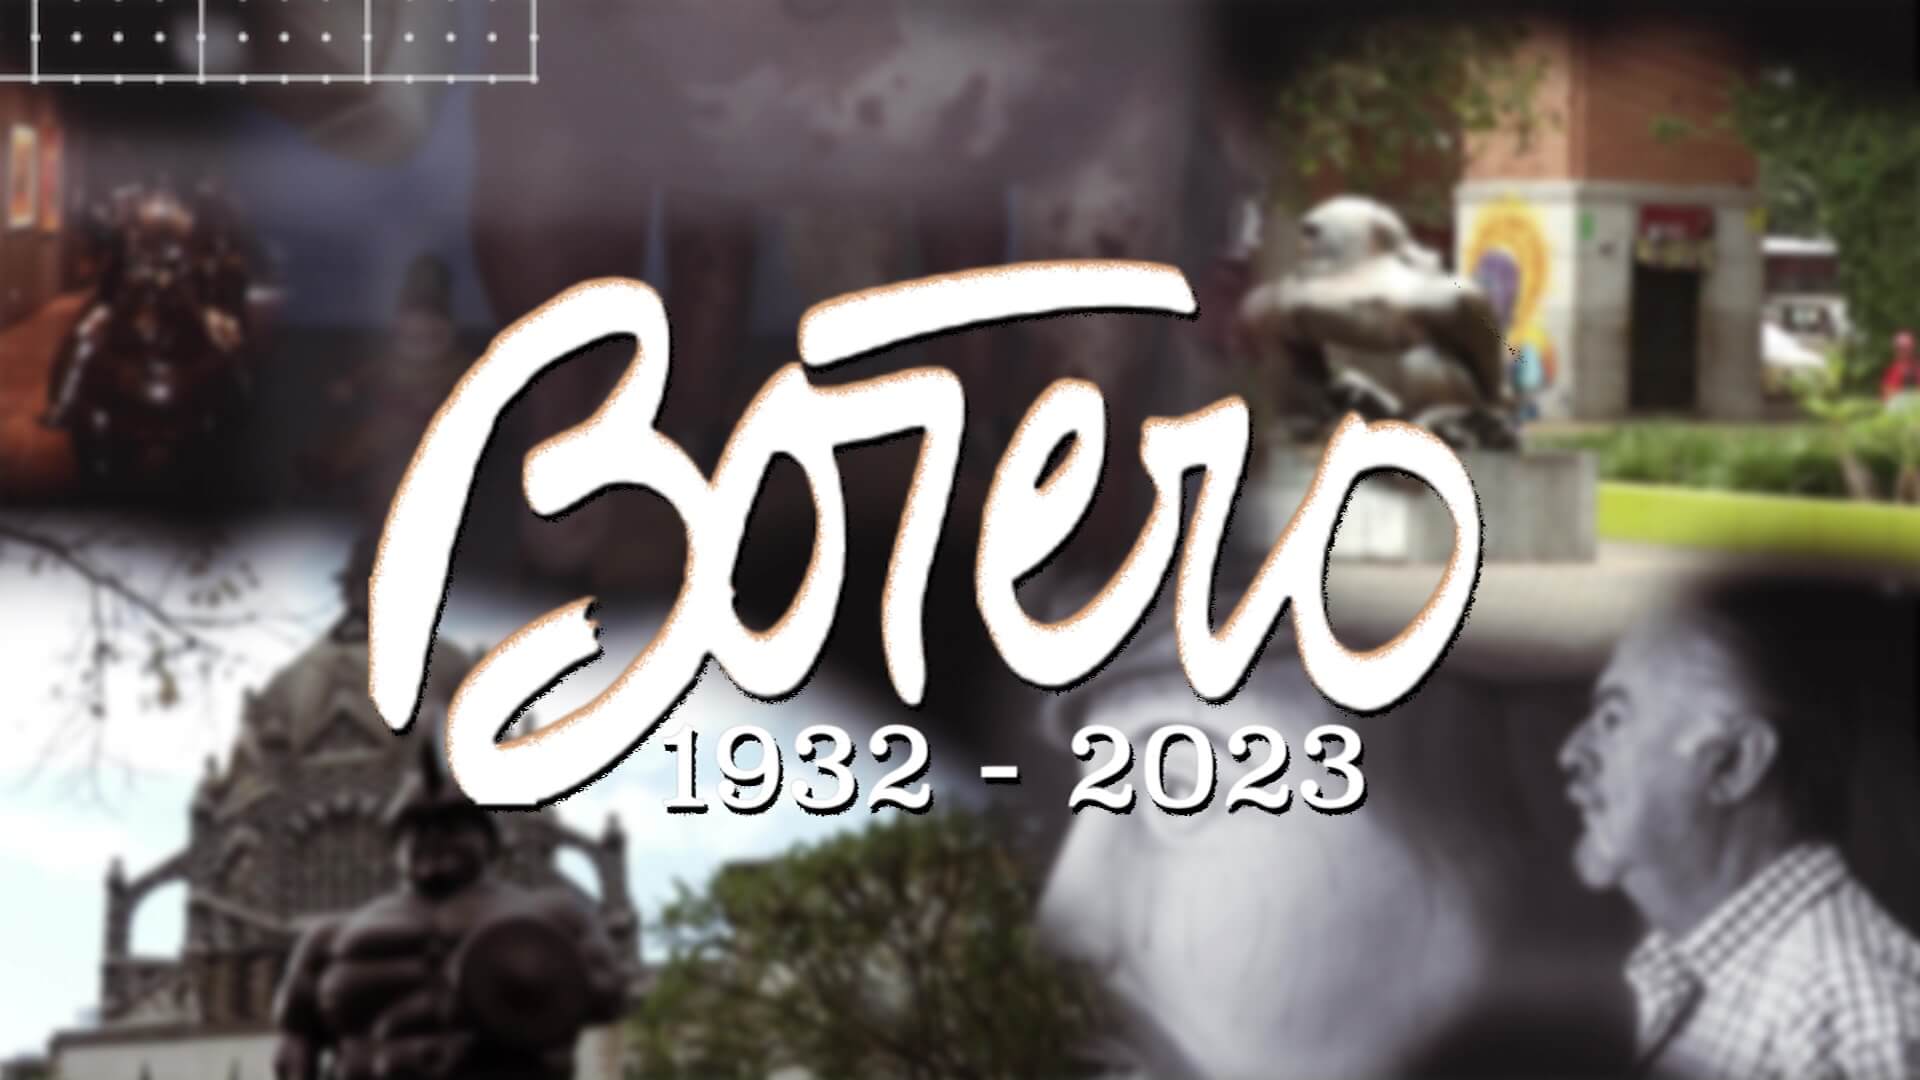 El maestro Fernando Botero falleció a los 91 años en Francia